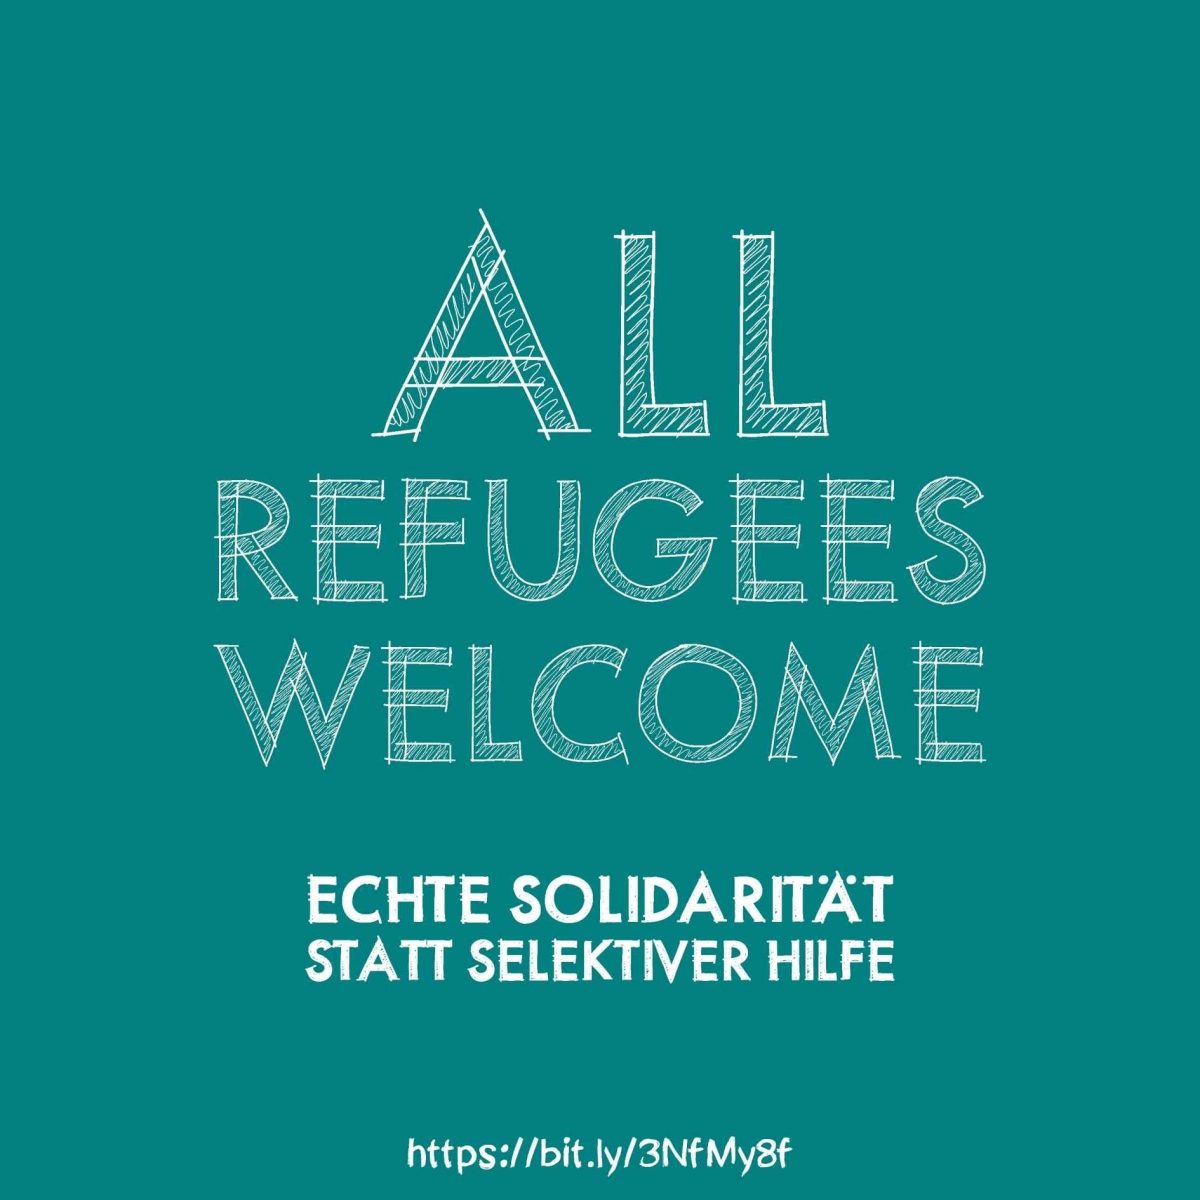 All Refugees Welcome! Echte Solidarität statt selektive Hilfe